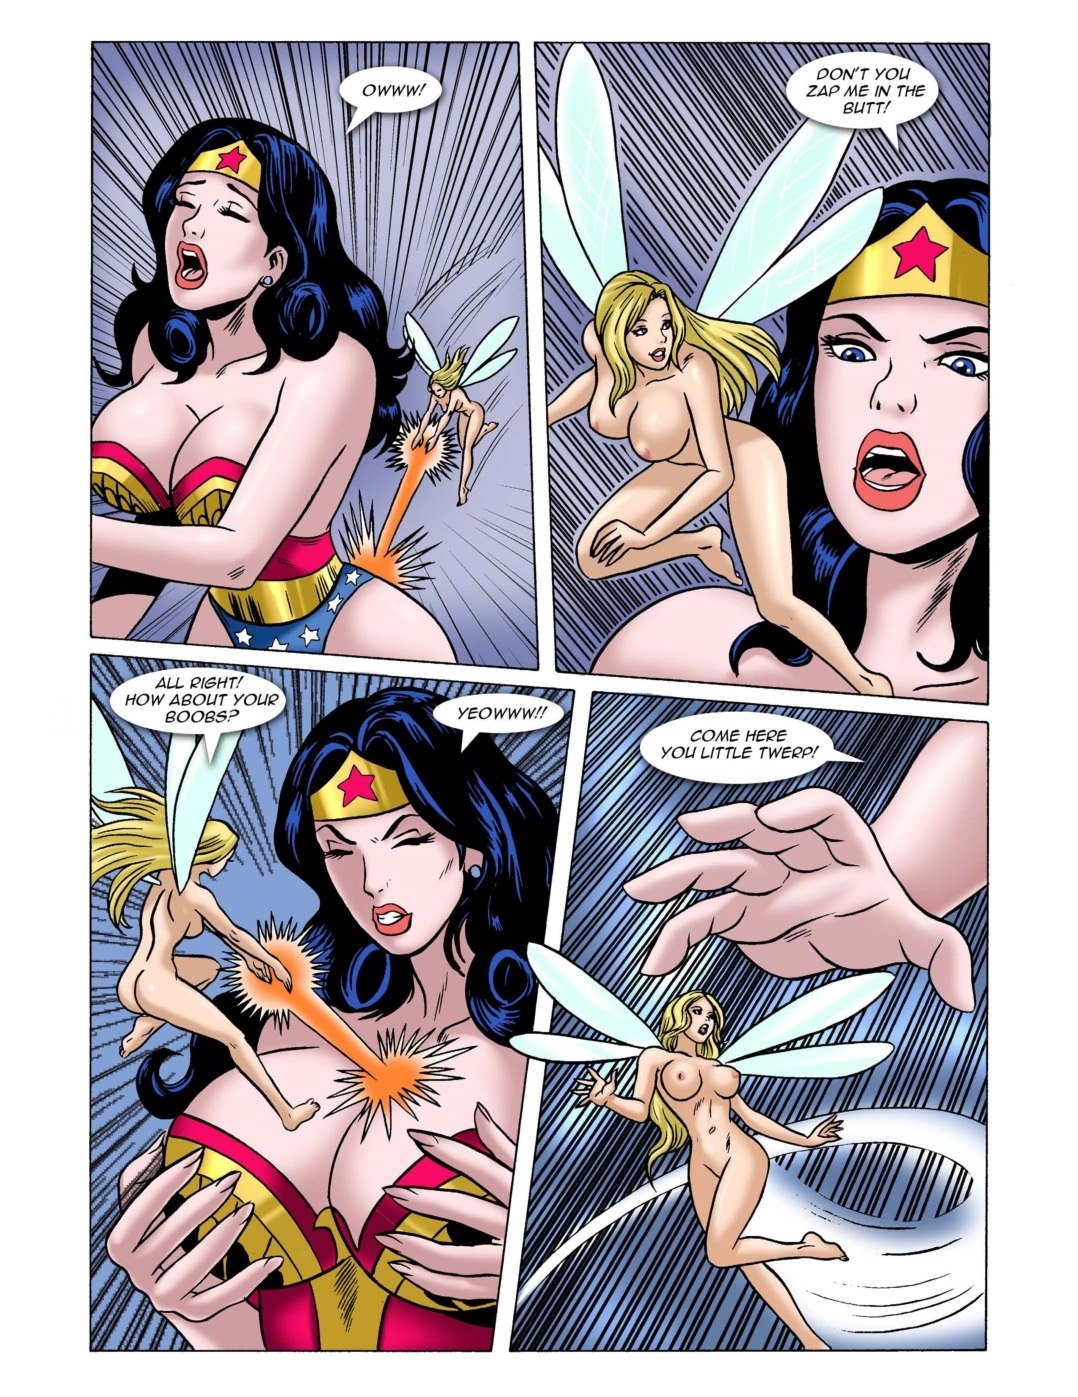 Superhero Cartoon Porn - Super Hero Party- Dreamtales - Porn Cartoon Comics